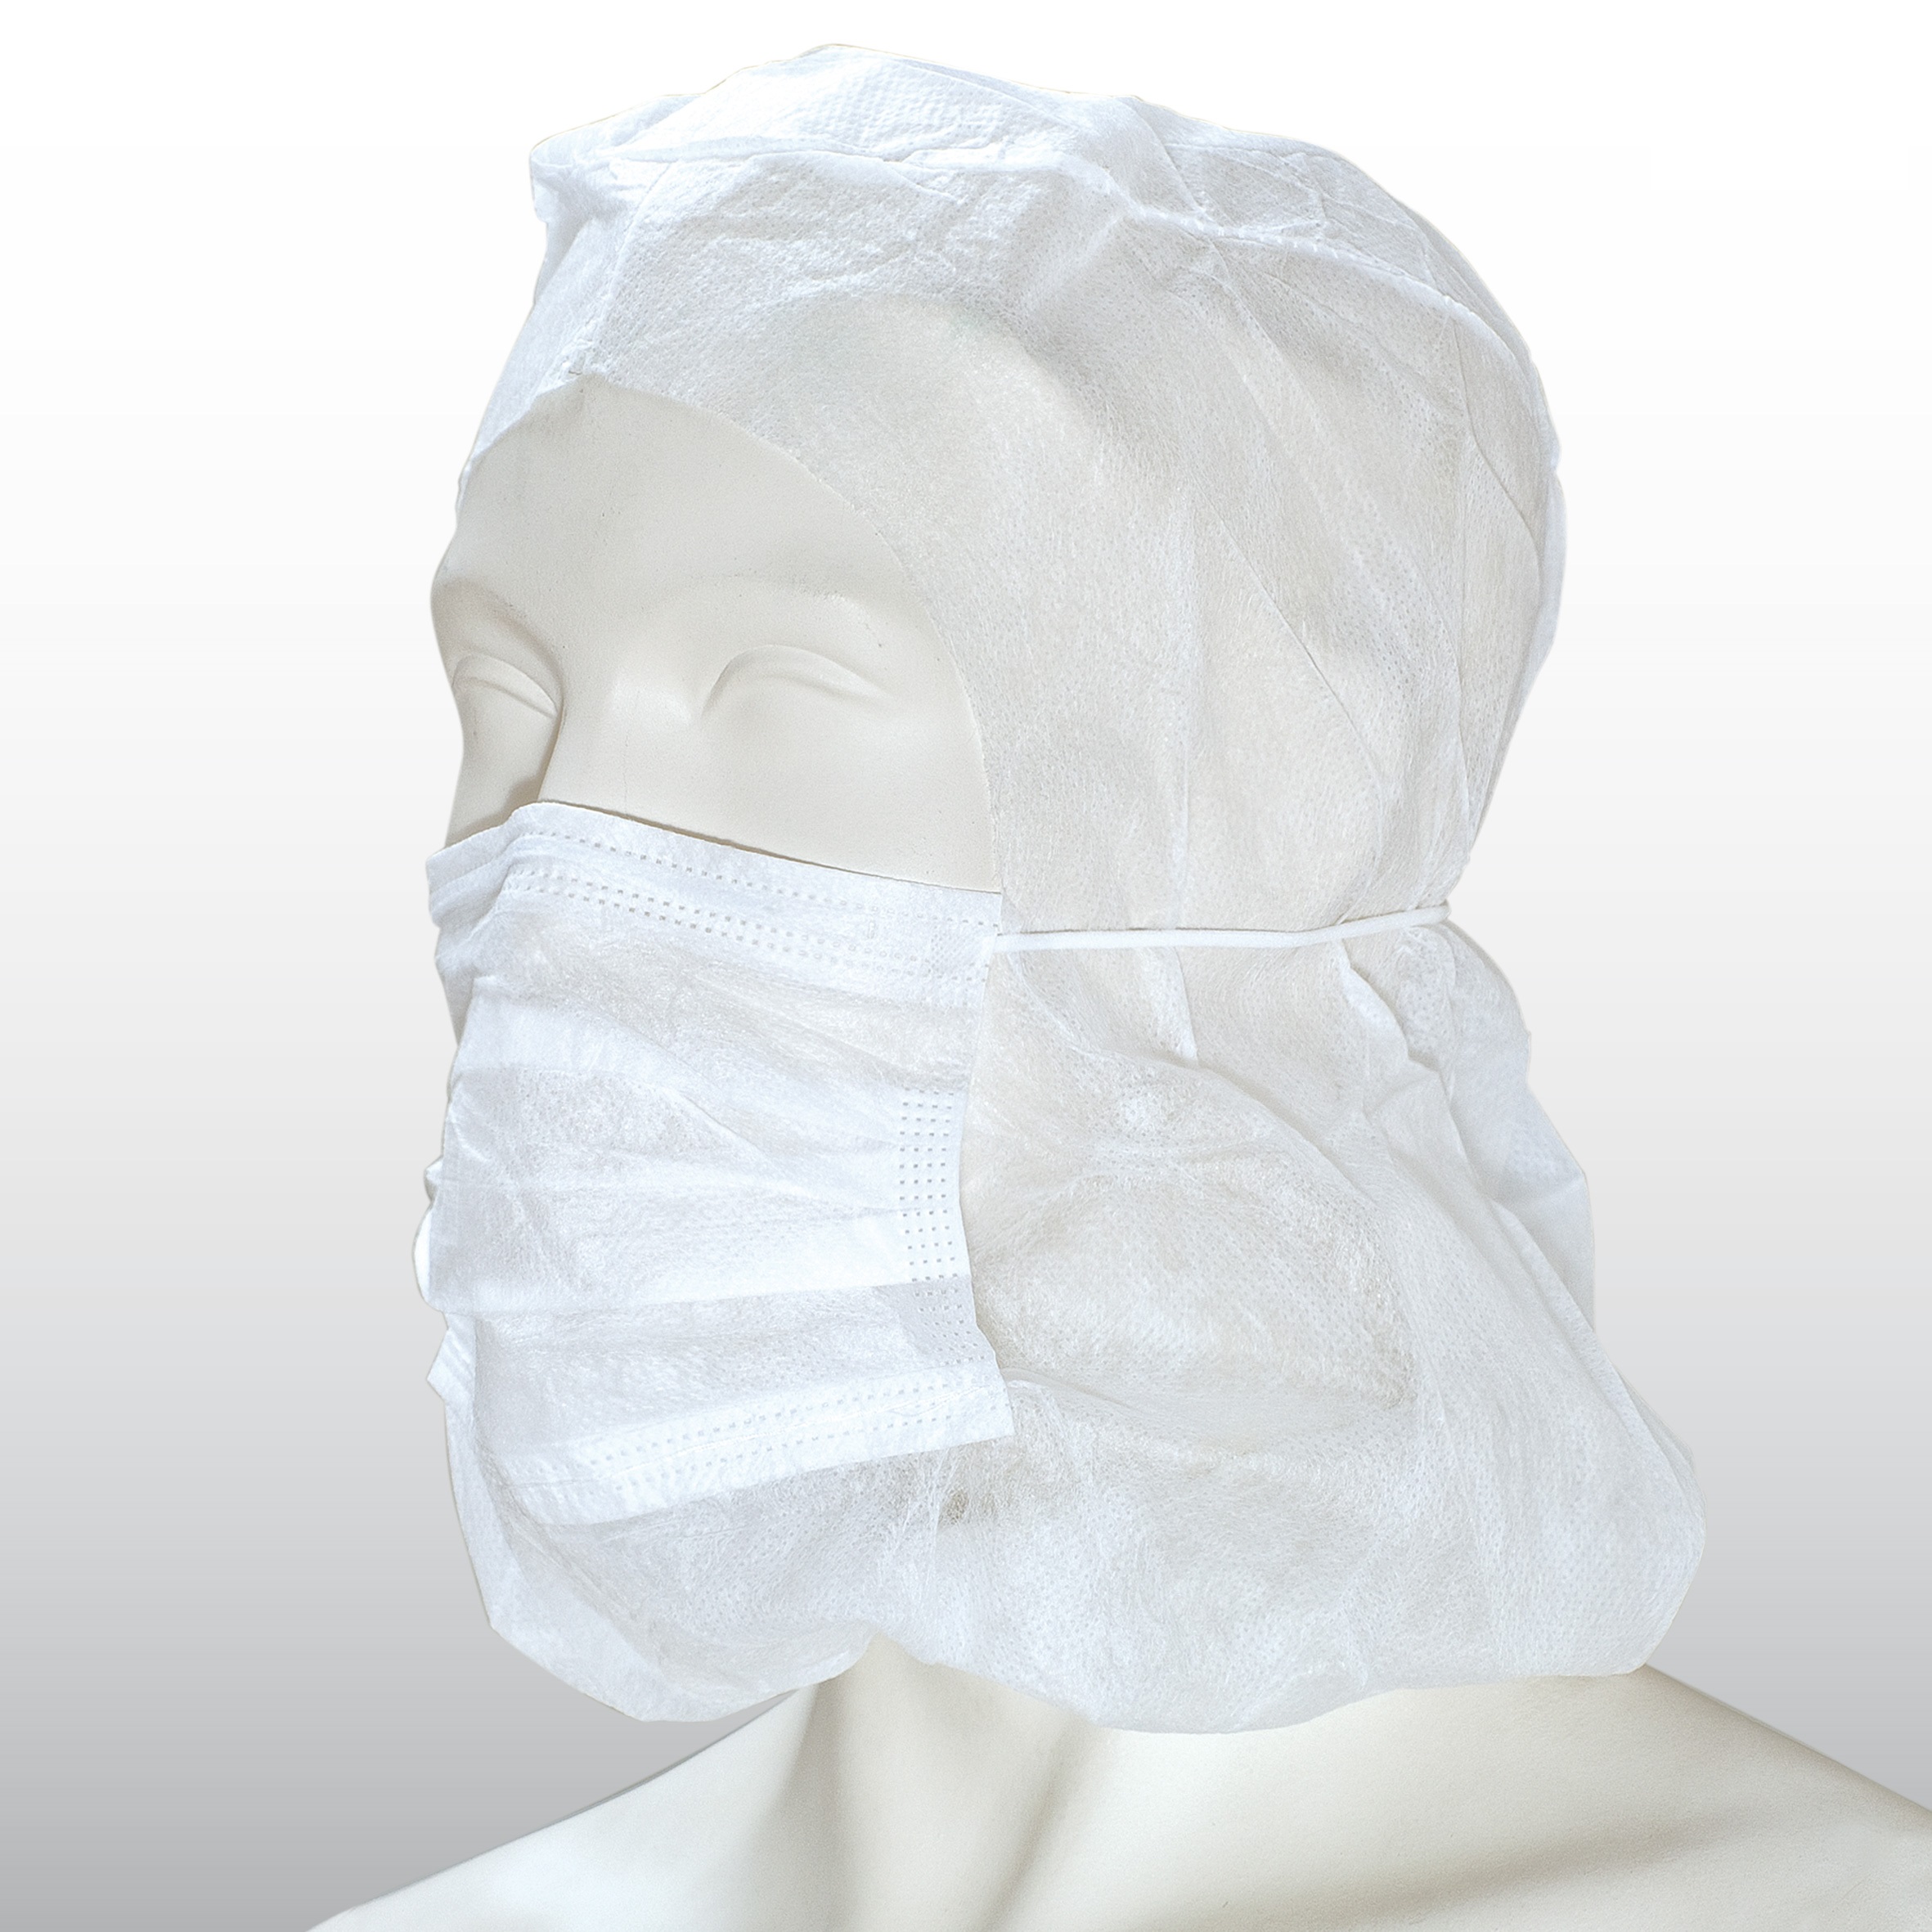 50 Stück Astronautenhaube aus PP-Vlies weiß mit 2-lagigen Mundschutz mit Stirngummi